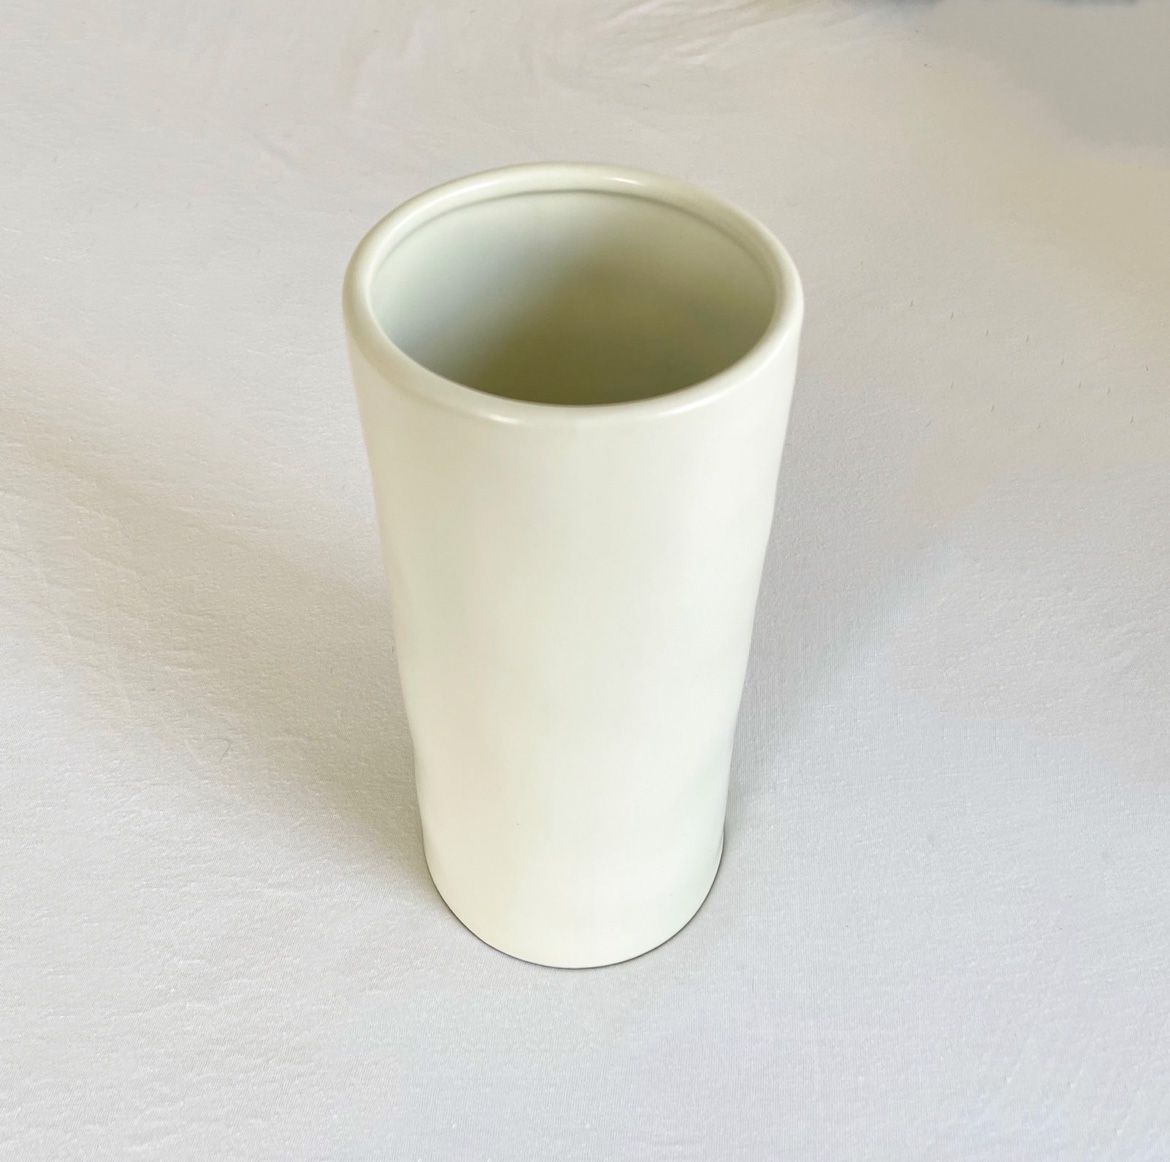 Target White Ceramic Decor Cylinder Flower Vase, White Minimal Modern Vase